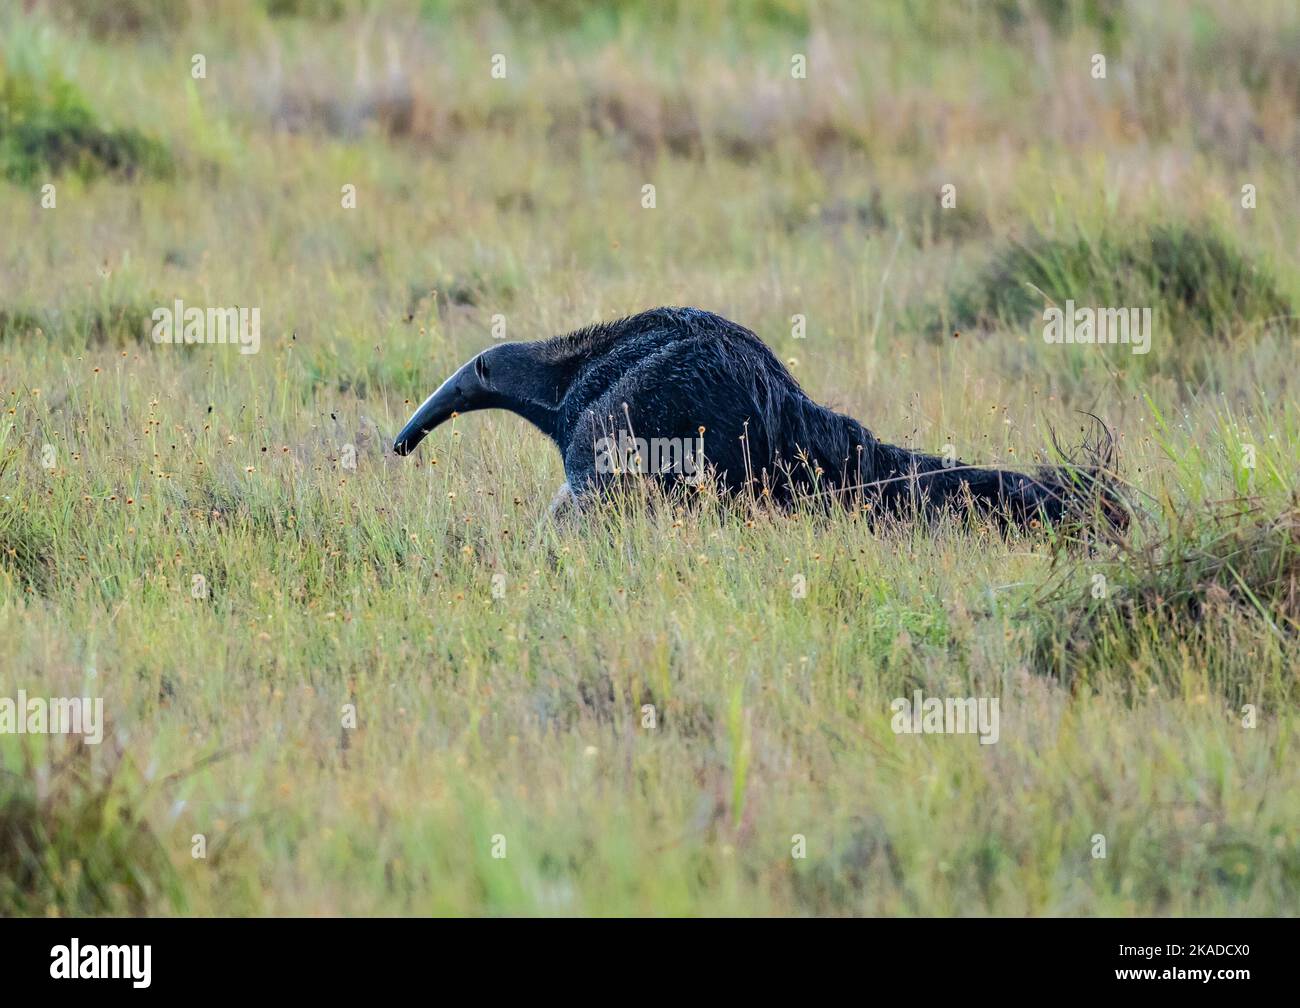 Une anteater géante (Myrmecophaga tridactyla) qui se trouve sur la prairie. Roraima, Brésil. Banque D'Images